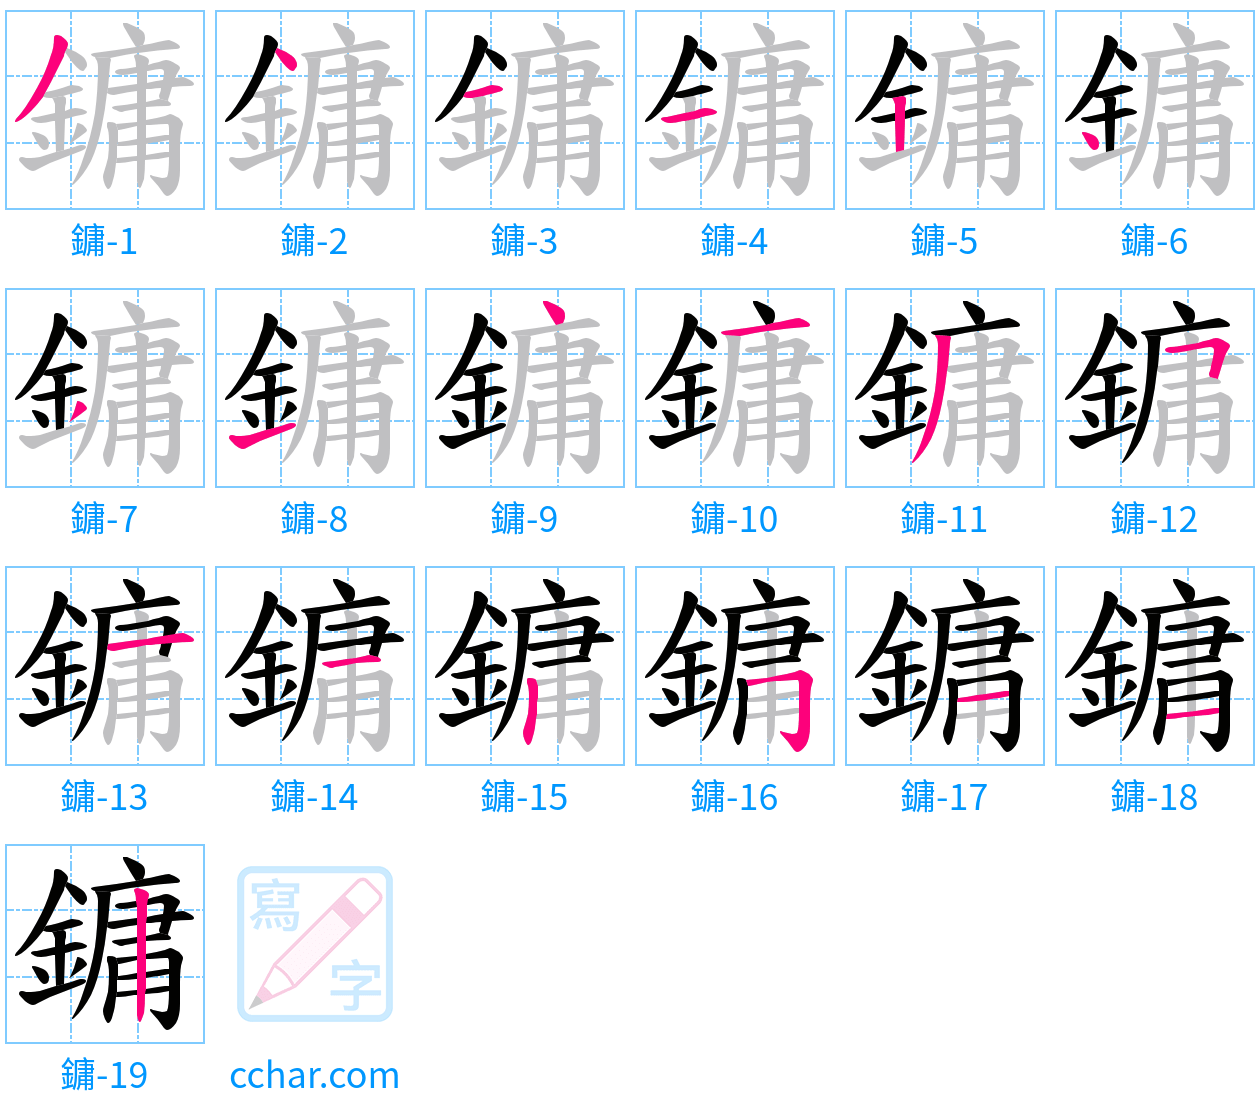 鏞 stroke order step-by-step diagram